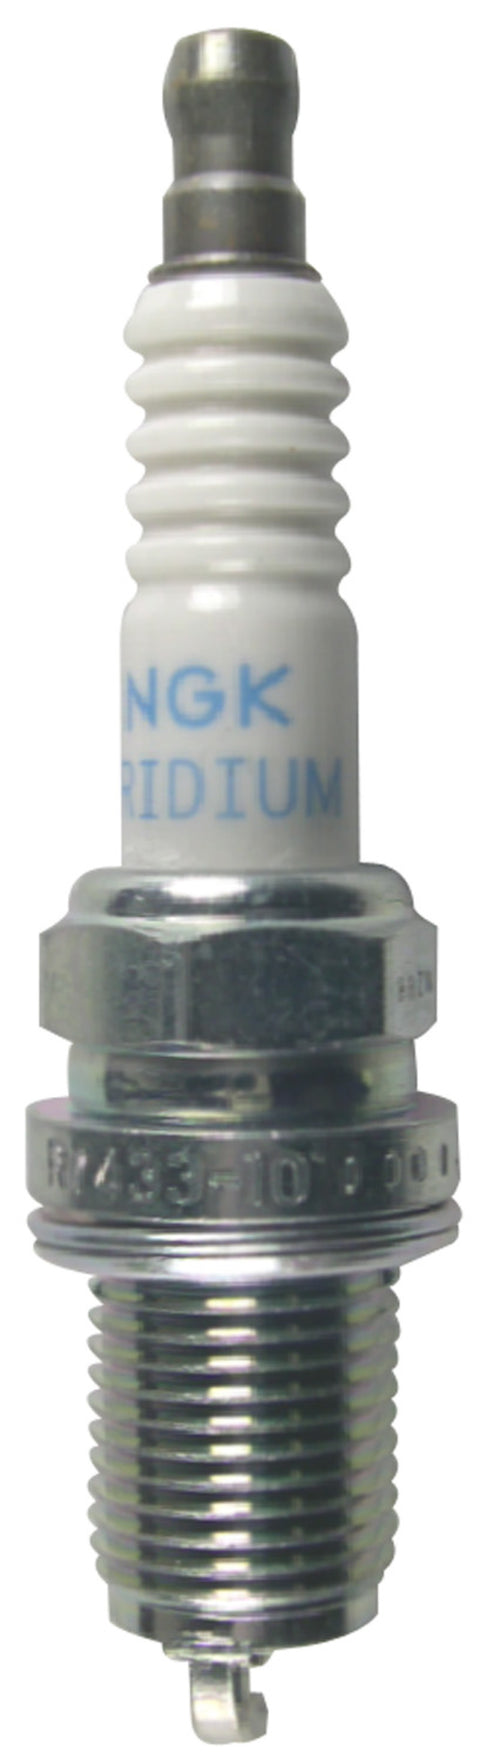 NGK Racing Spark Plug Box of 4 (R7433-9)